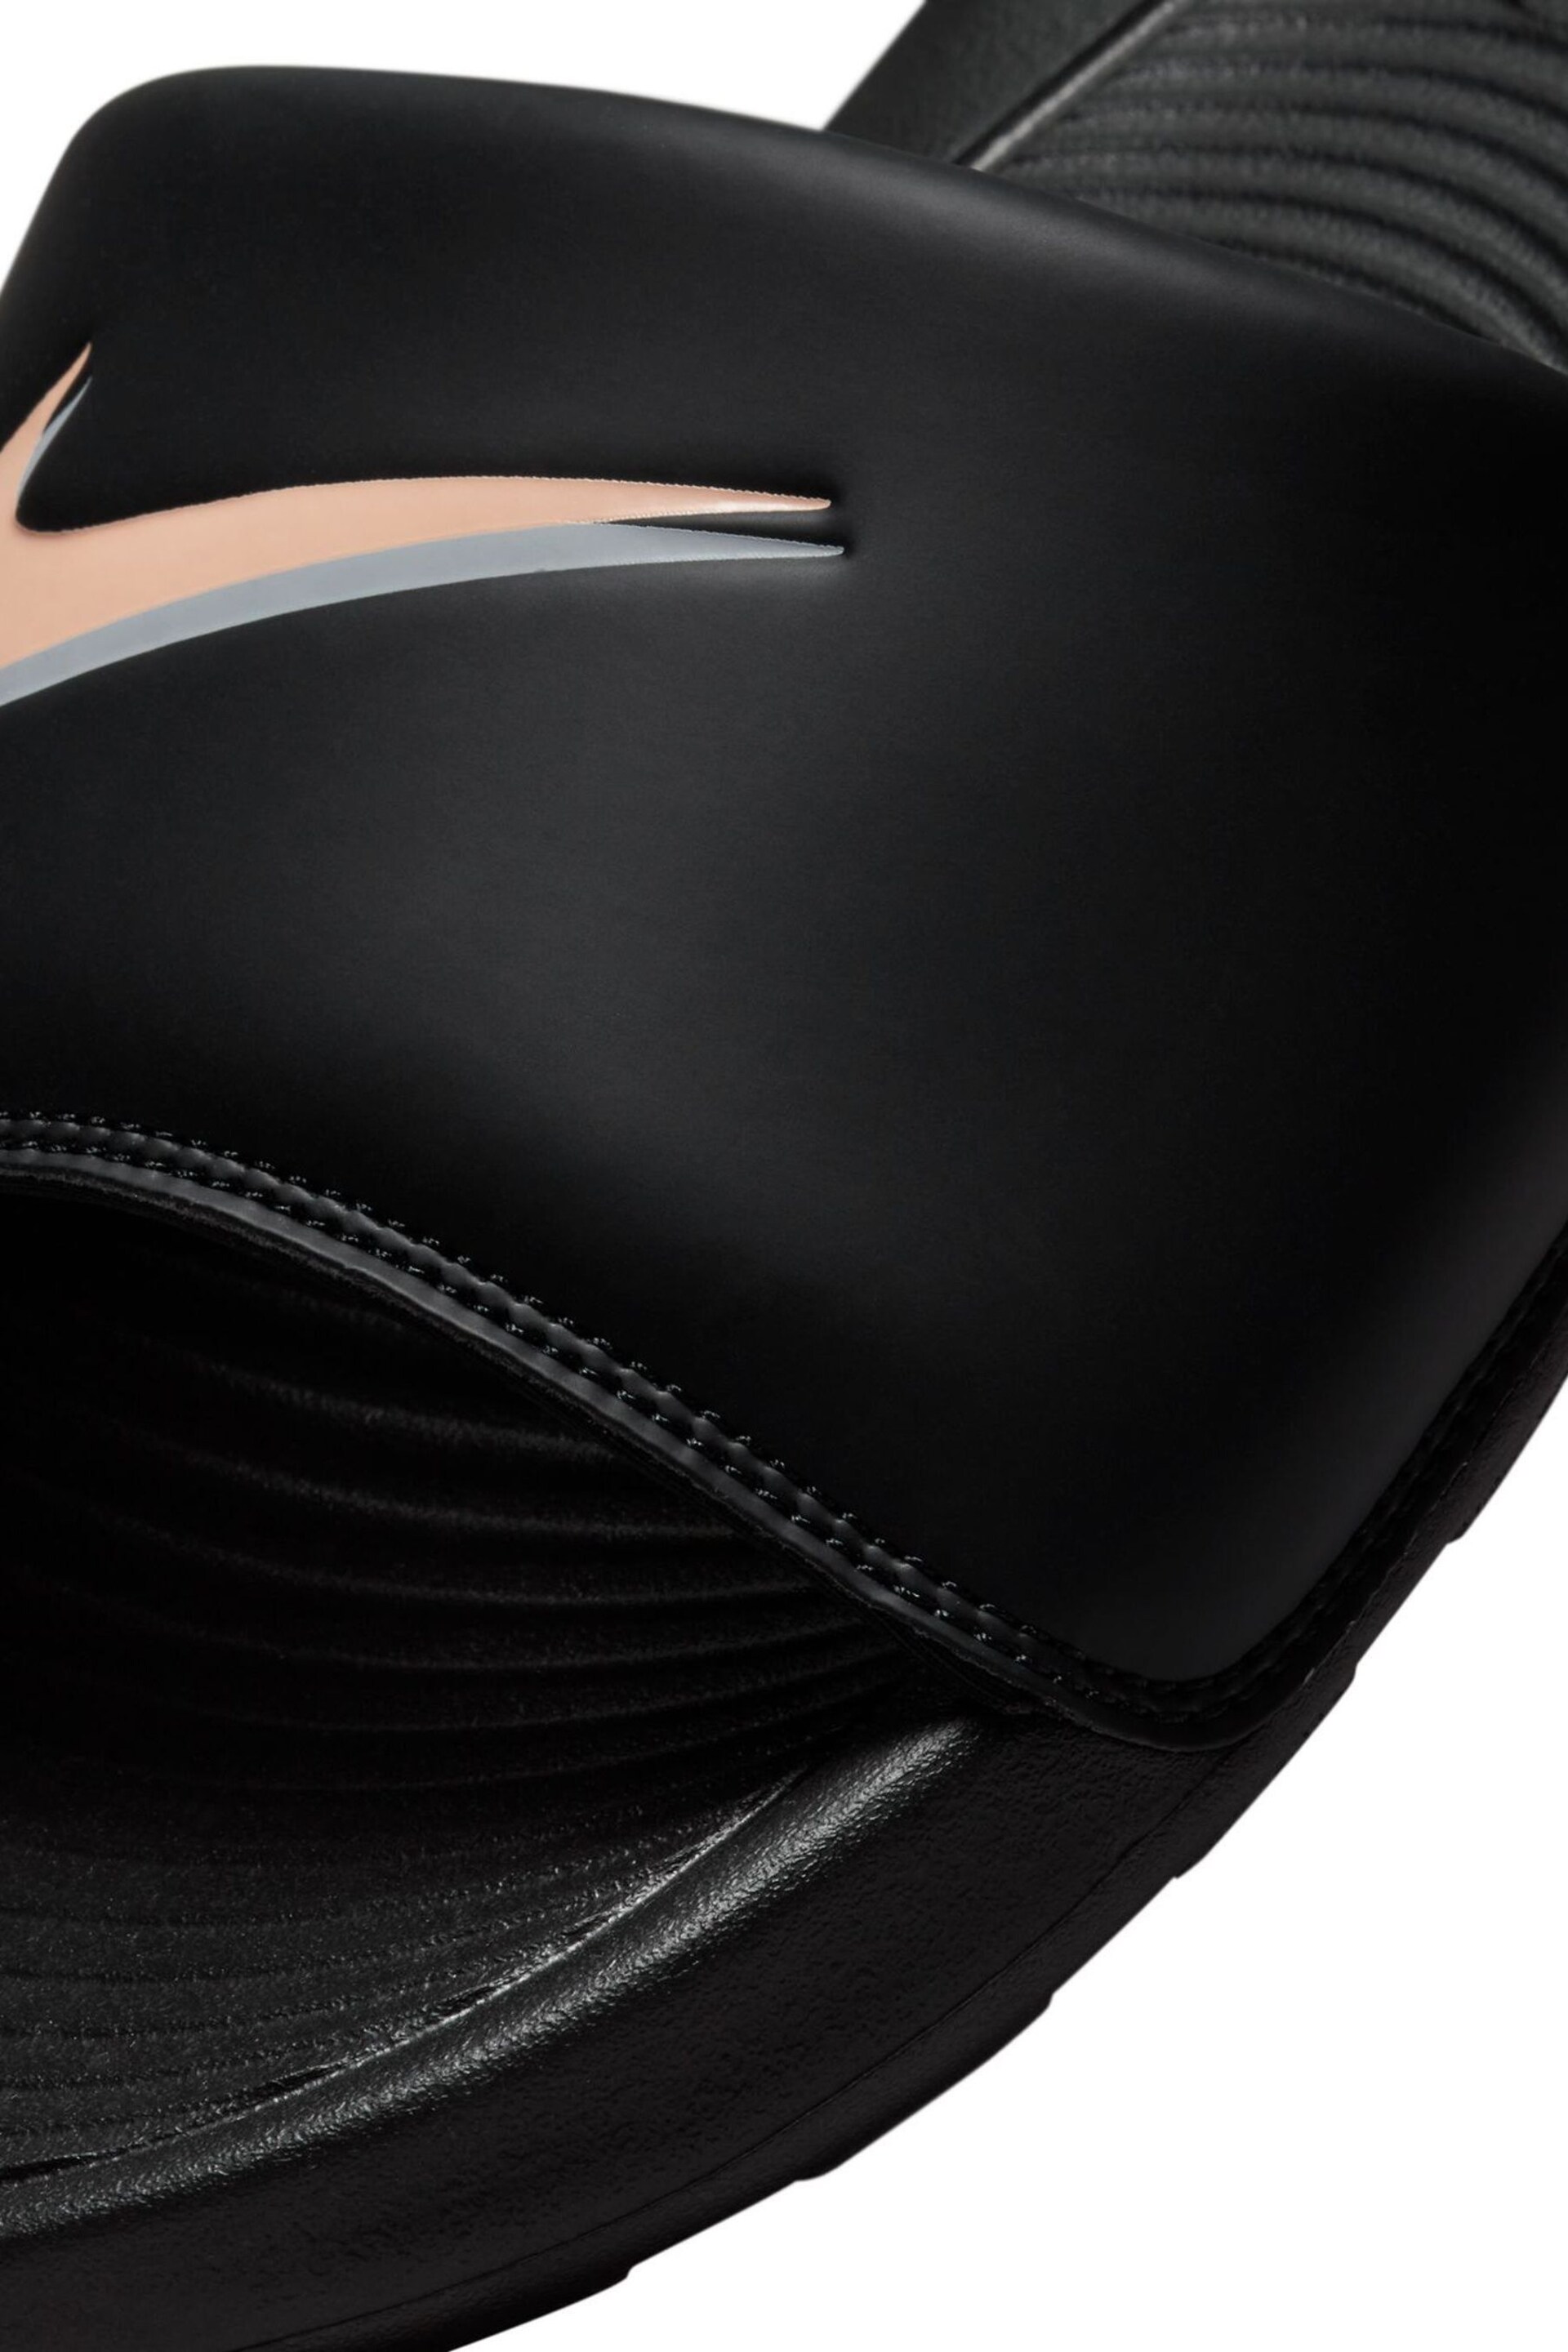 Nike Coal Black Victori One Sliders - Image 7 of 7